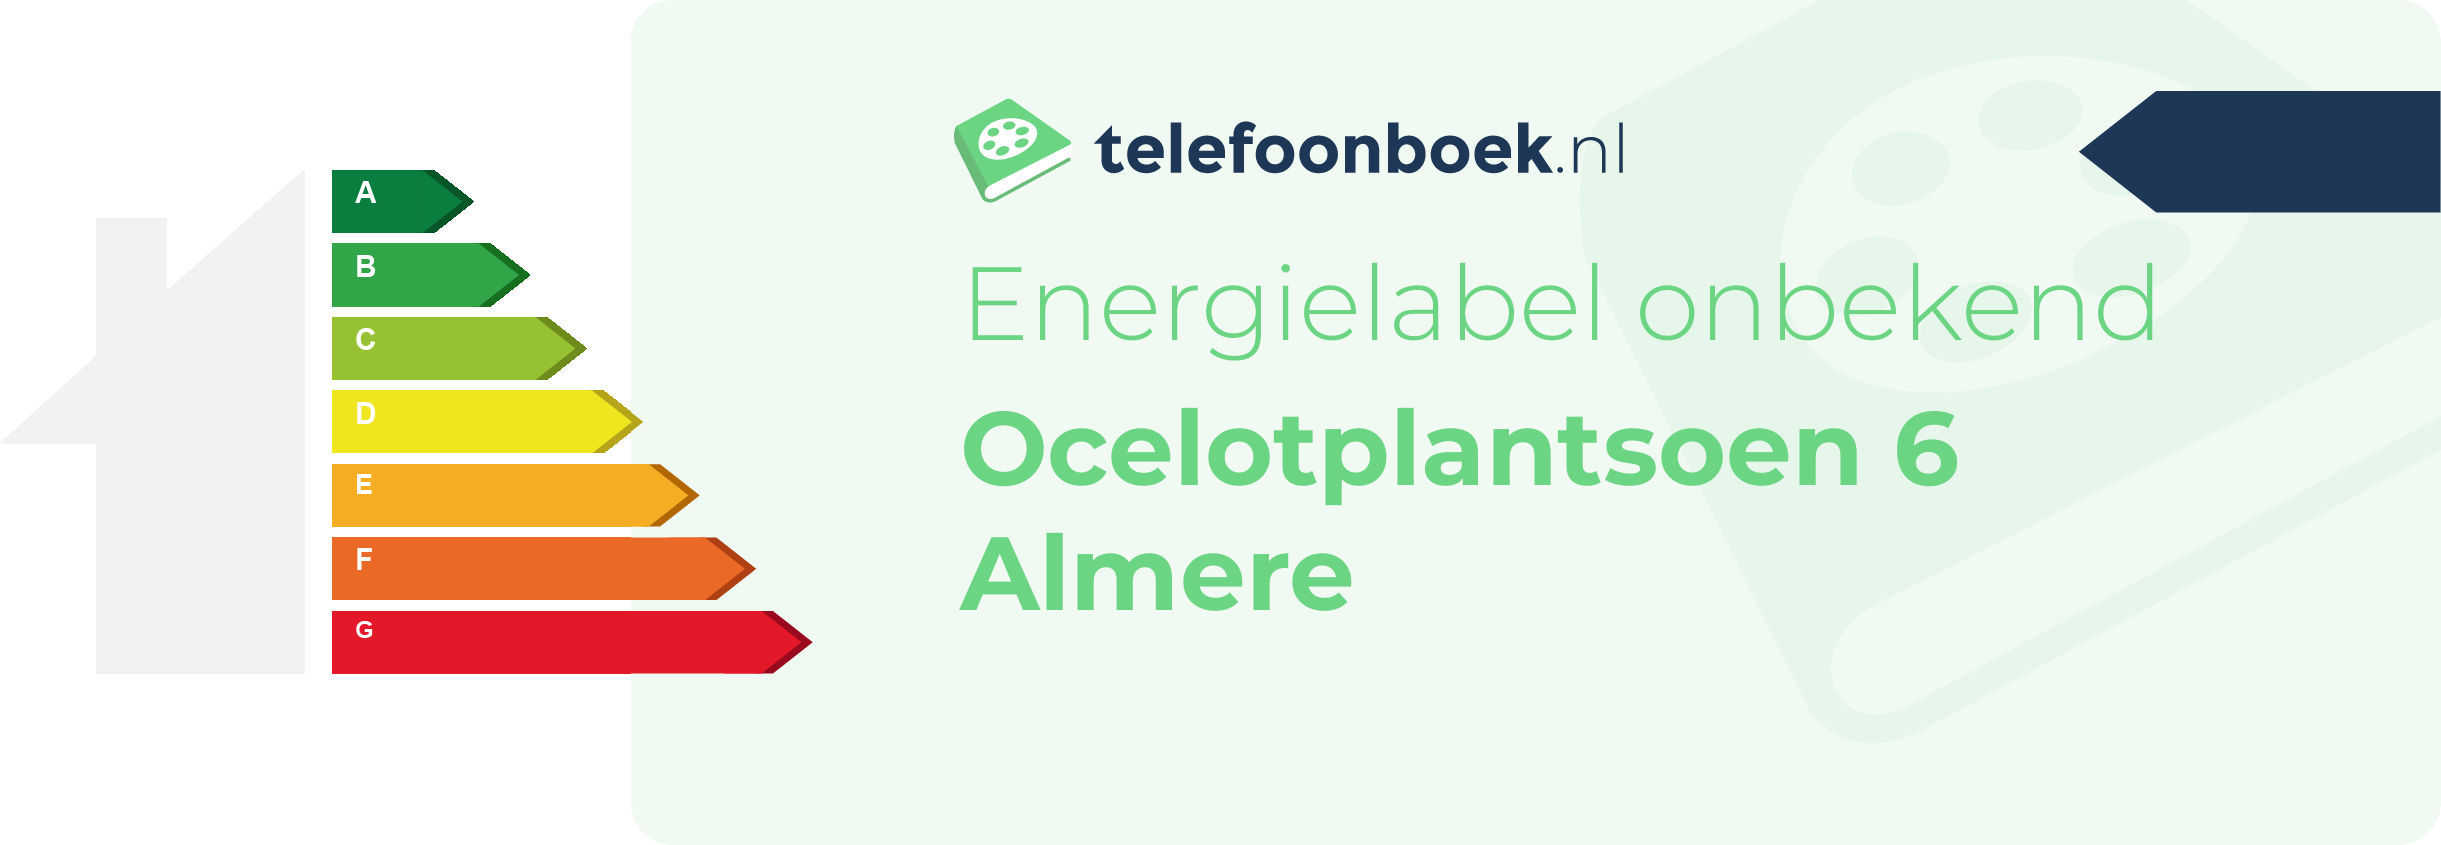 Energielabel Ocelotplantsoen 6 Almere